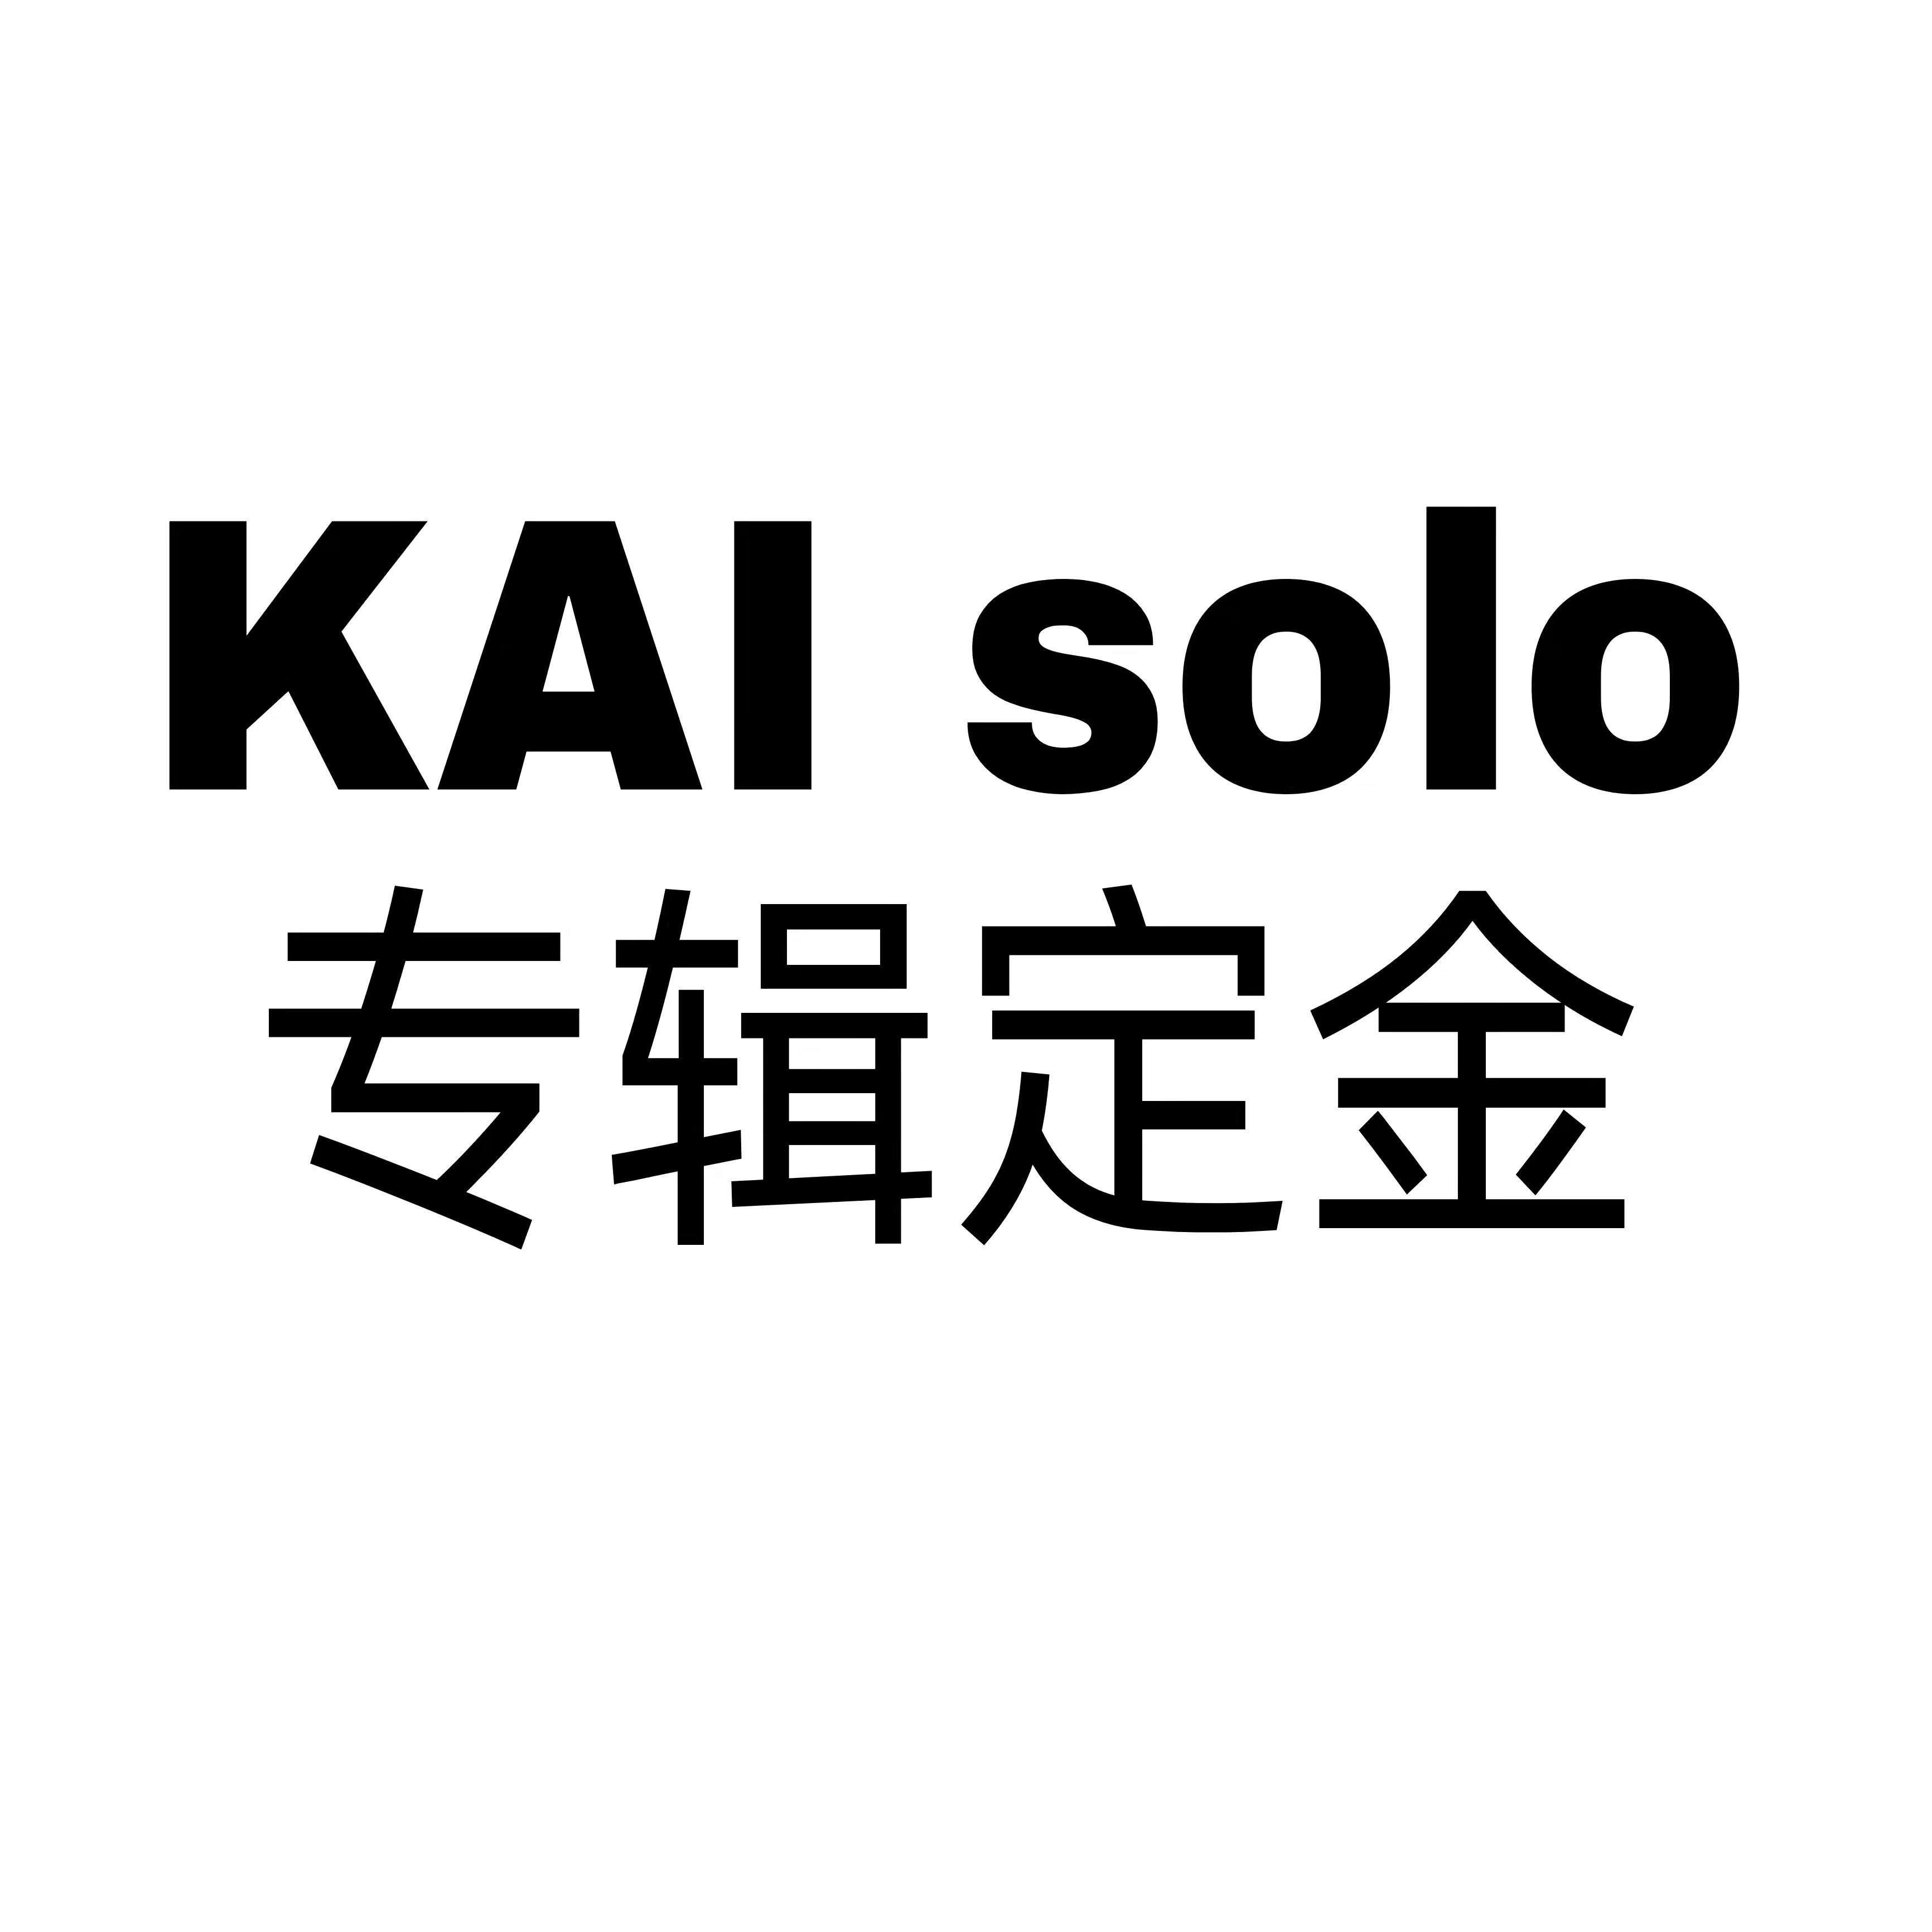 [定金 裸专] KAI金钟仁solo专辑定金_0805-planet打投组